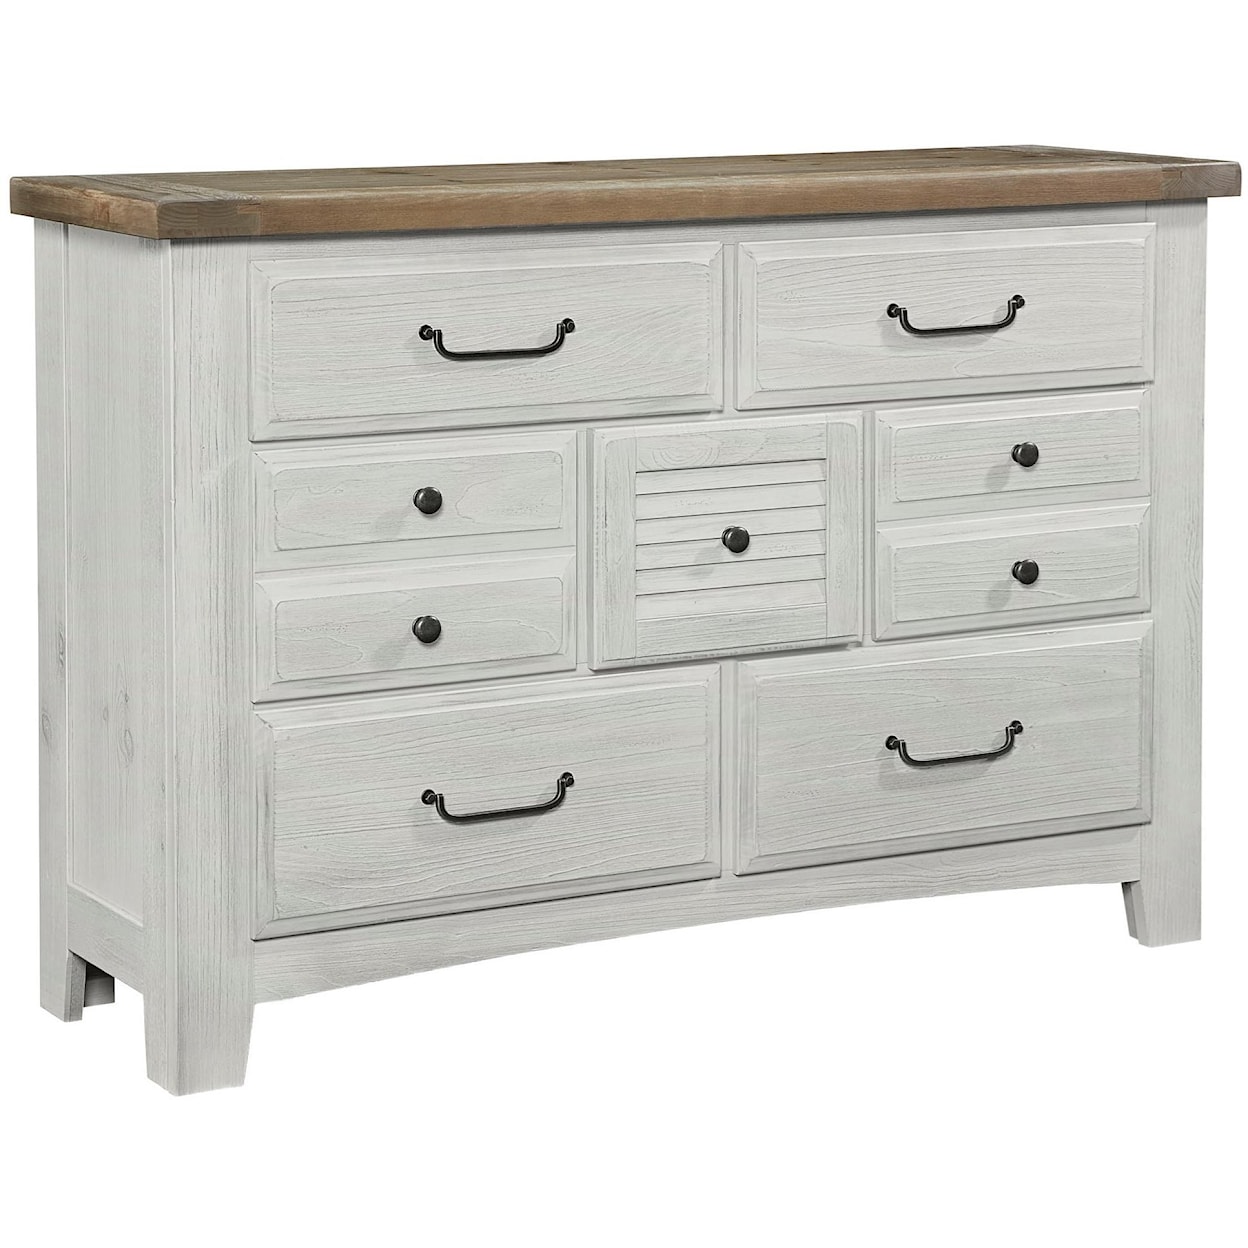 Vaughan Bassett Sawmill Dresser - 7 drawers